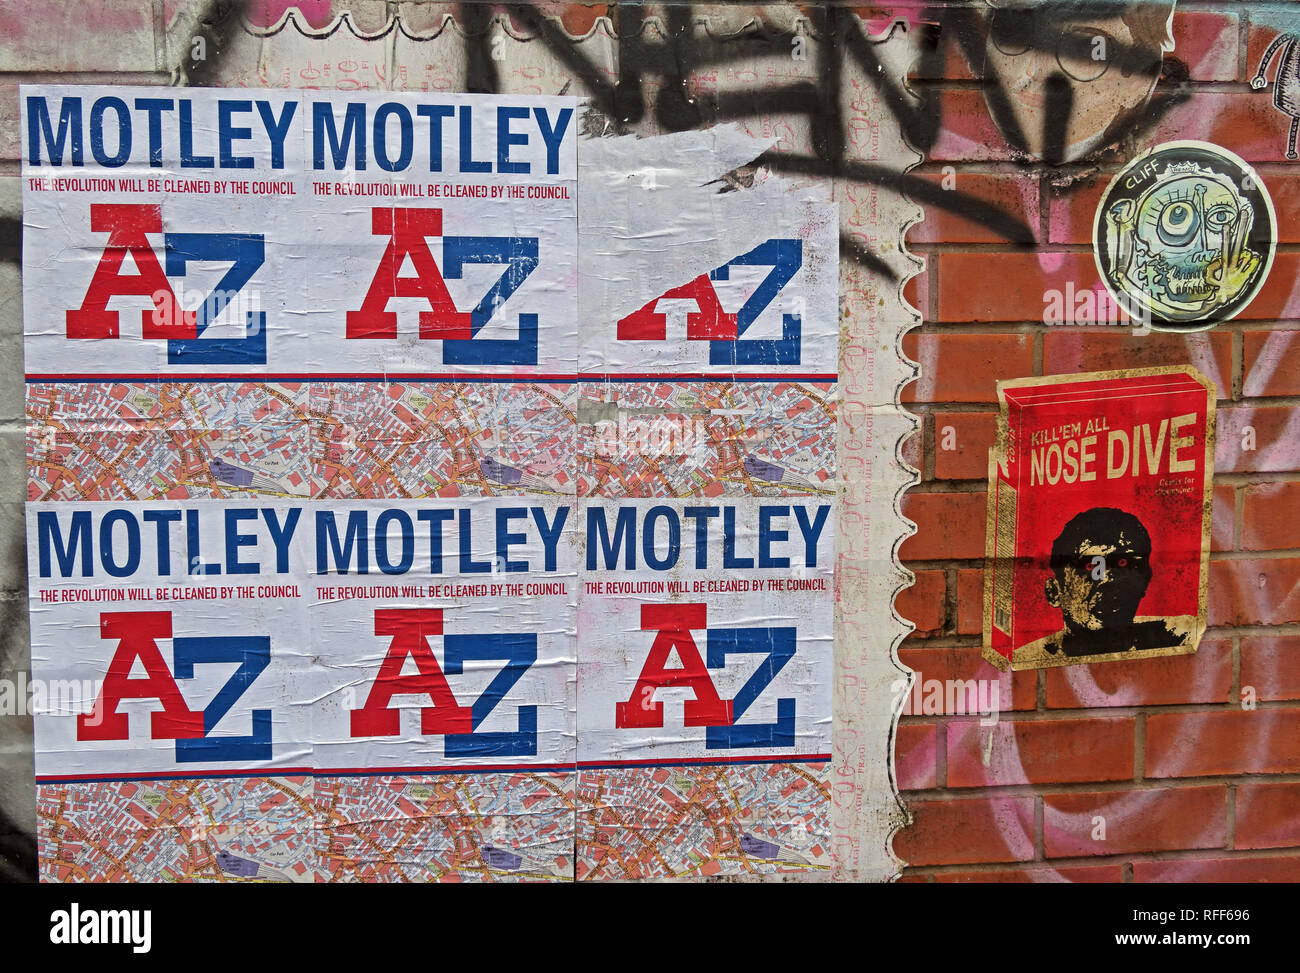 Die Revolution wird nicht durch den Rat, Motley AtoZ, AZ Street Art, Manchester Northern Quarter, North West England, UK gereinigt werden Stockfoto